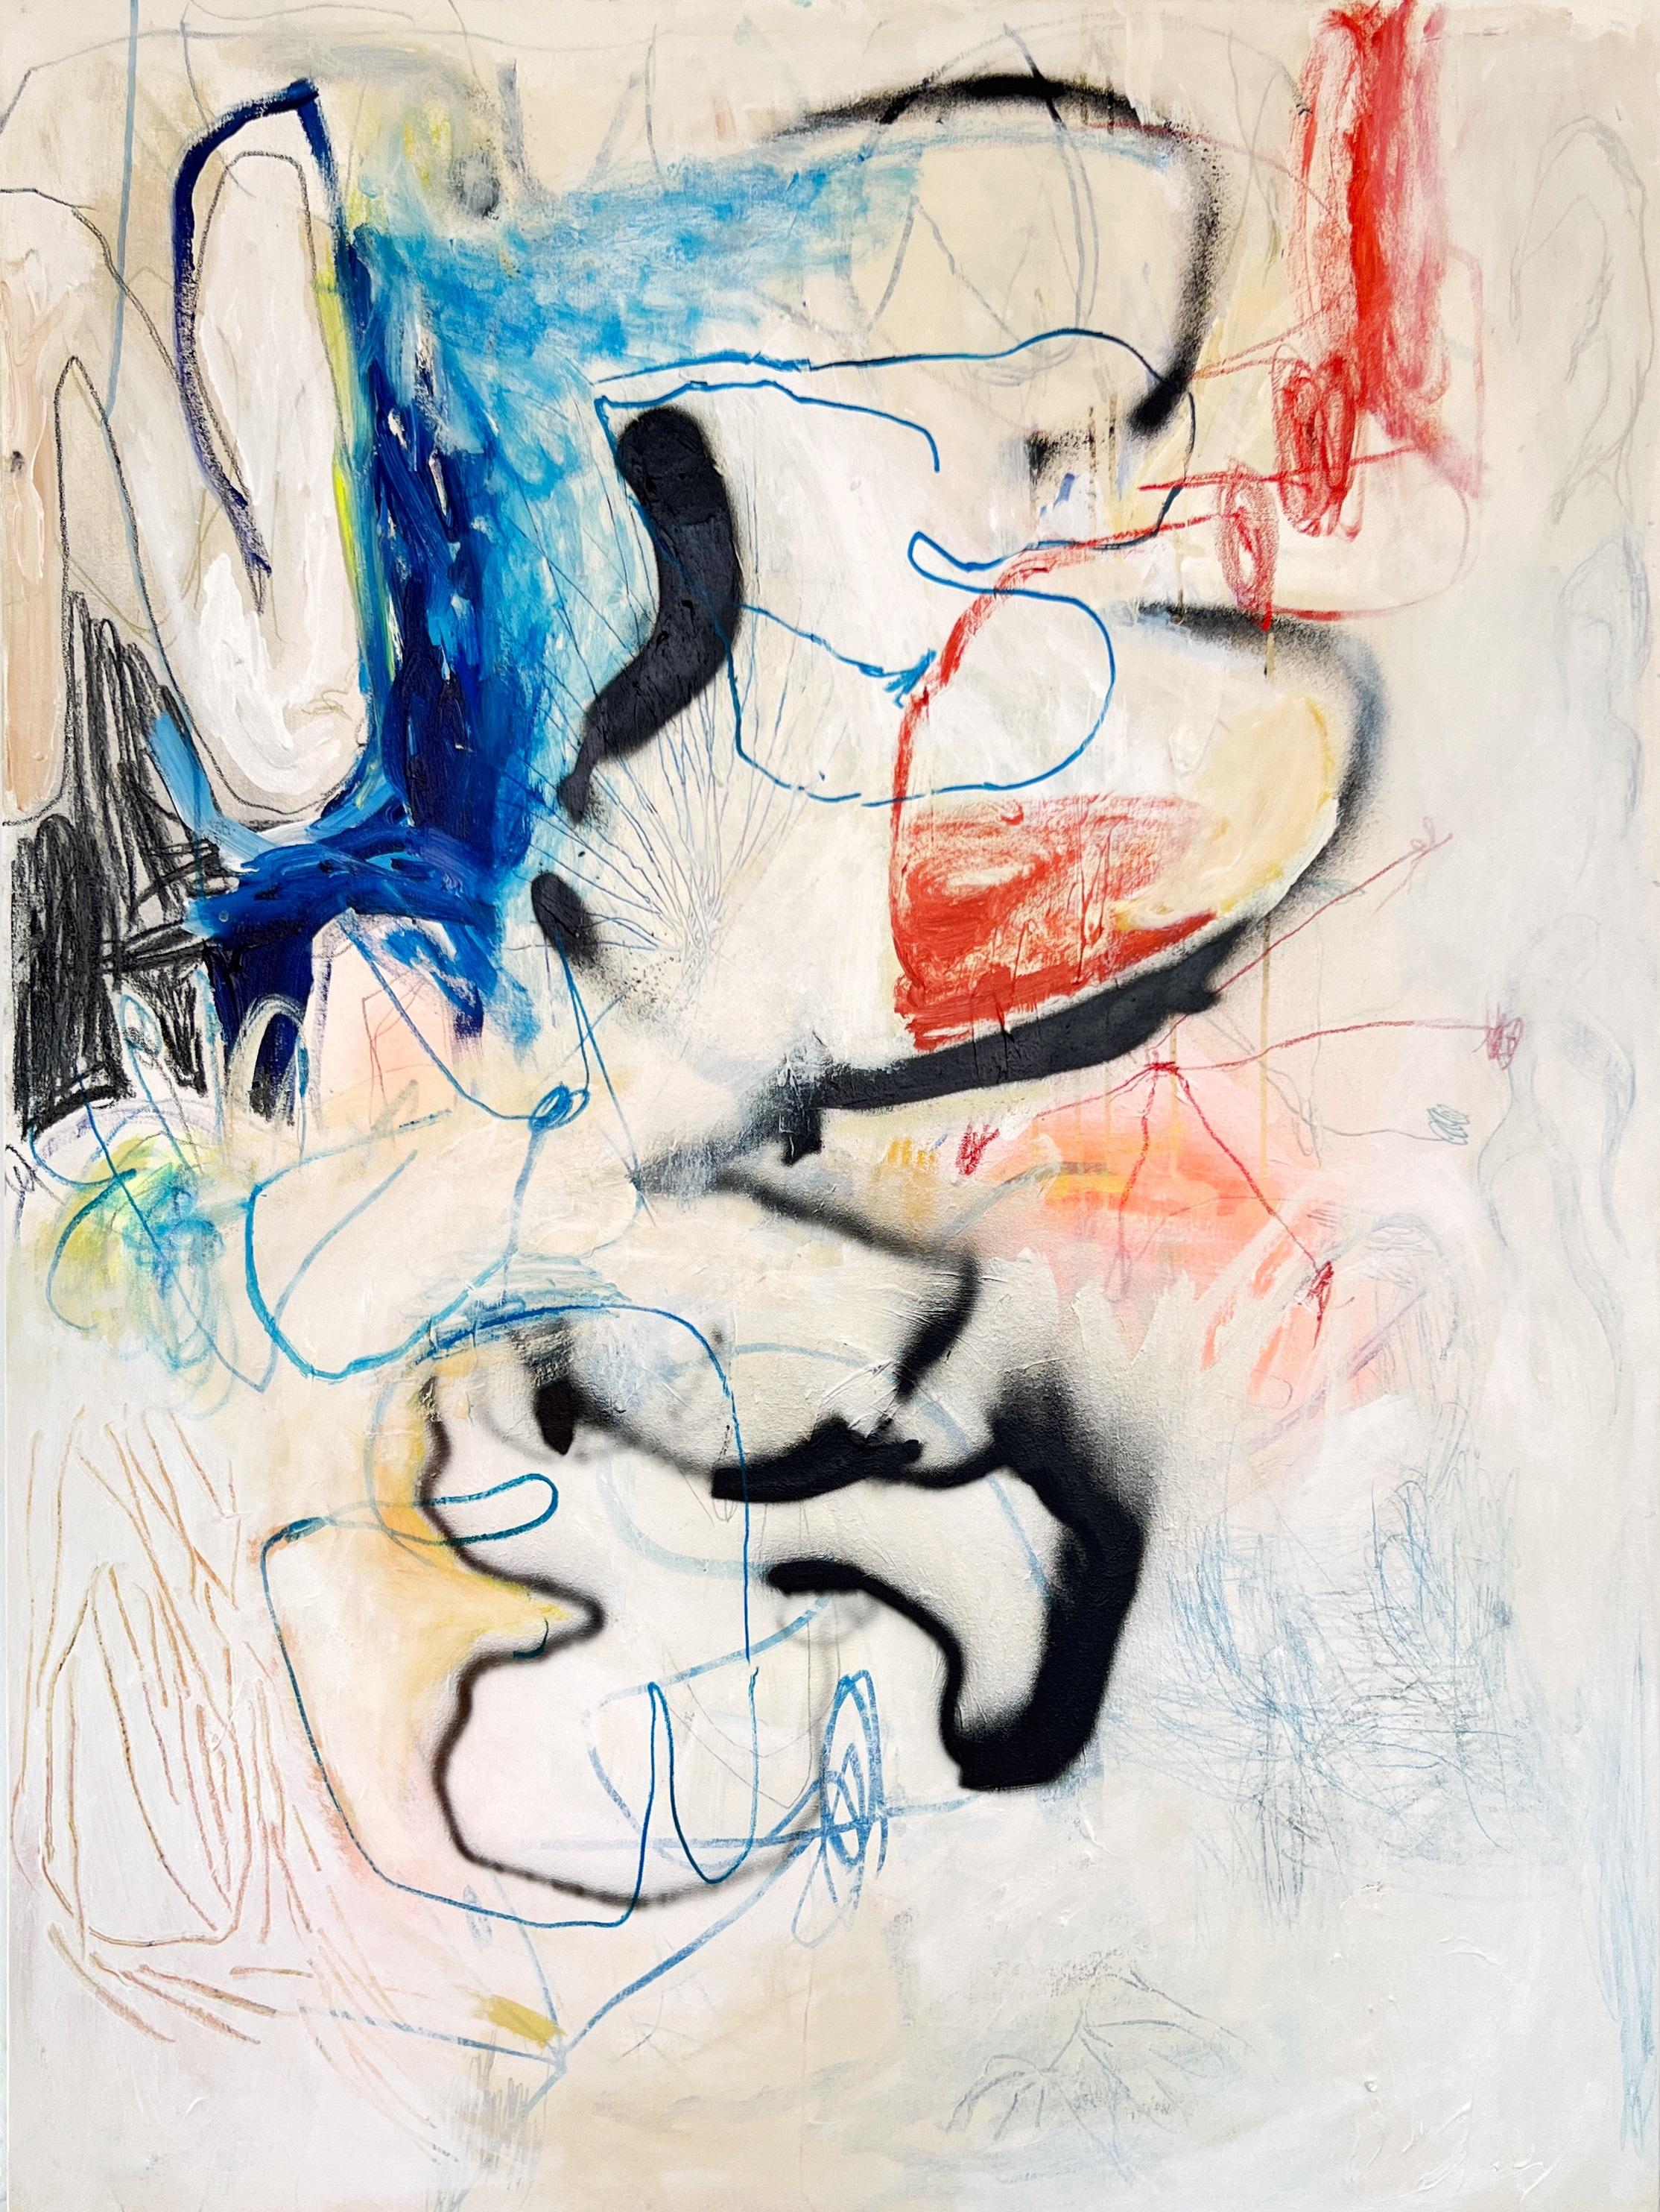 Sophie Crichton ist eine abstrakte Malerin aus Toronto (geb. 1993), die derzeit in Barcelona lebt und arbeitet. Ihre Arbeiten sind eine visuelle Manifestation ihrer Erfahrungen, ihrer Interaktion mit dem städtischen Umfeld und ihres Bewusstseins für